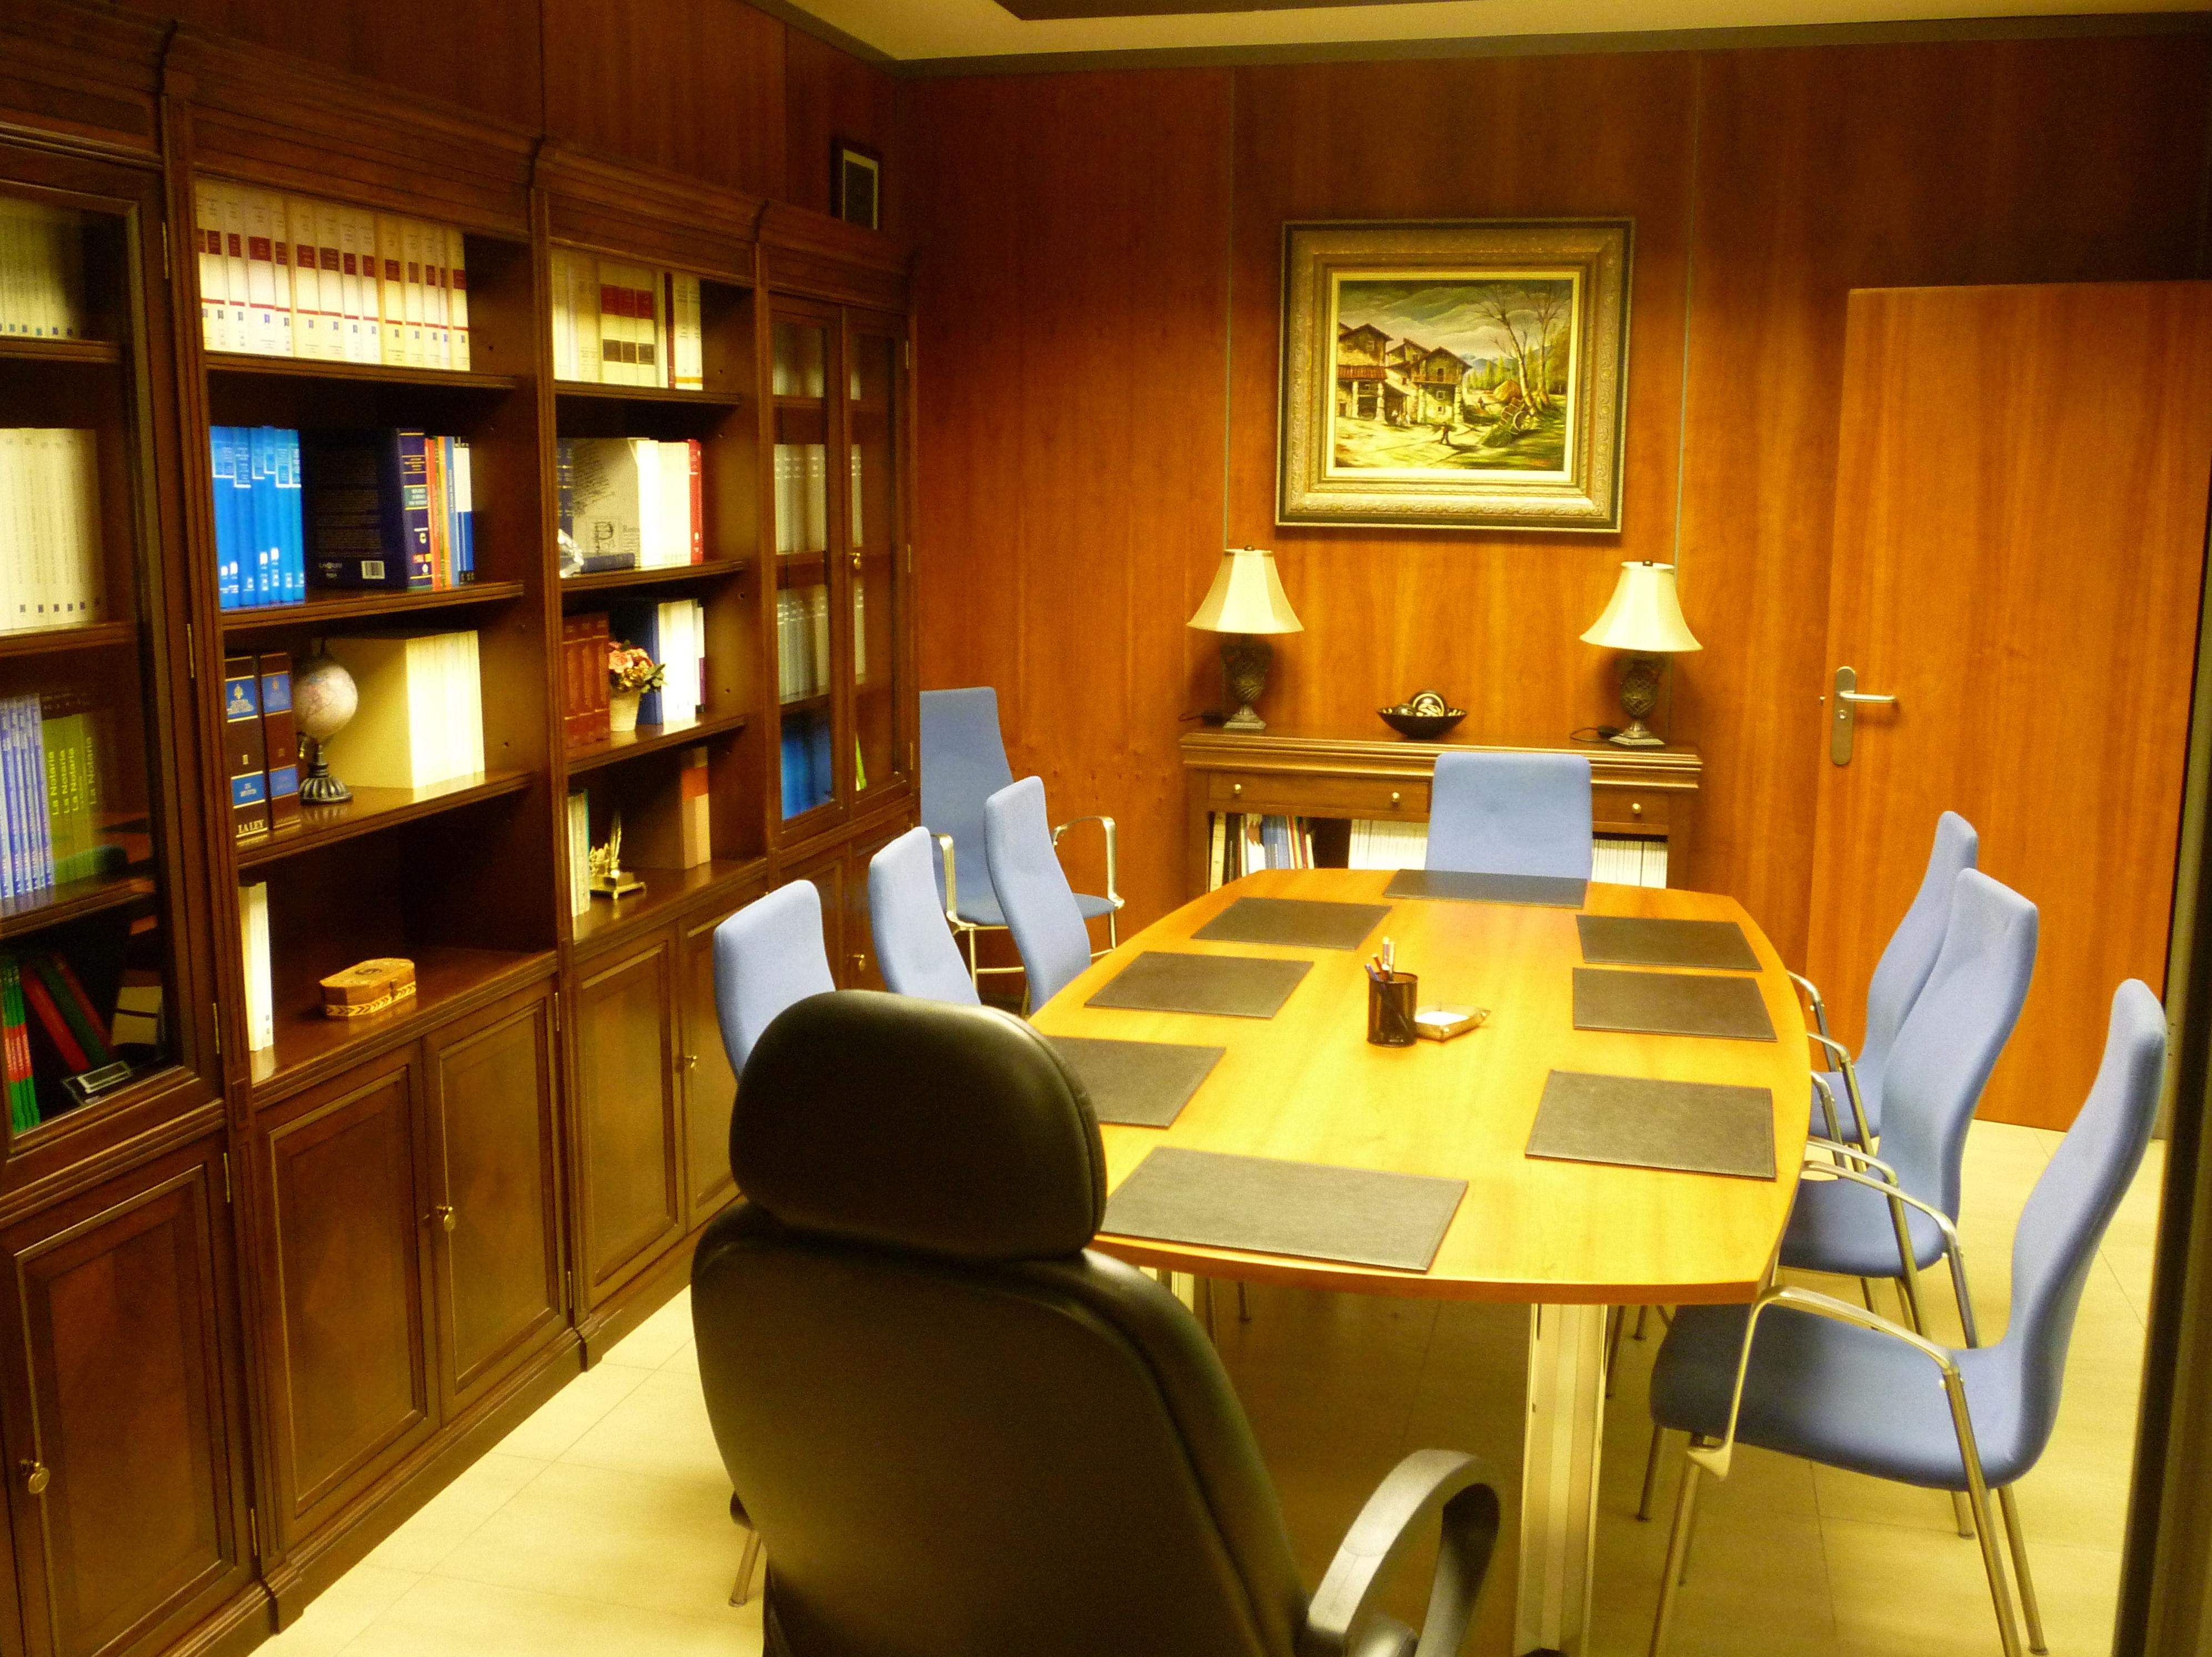 Sala de reuniones en la Notaría José Miguel Avello en Zuera (Zaragoza)